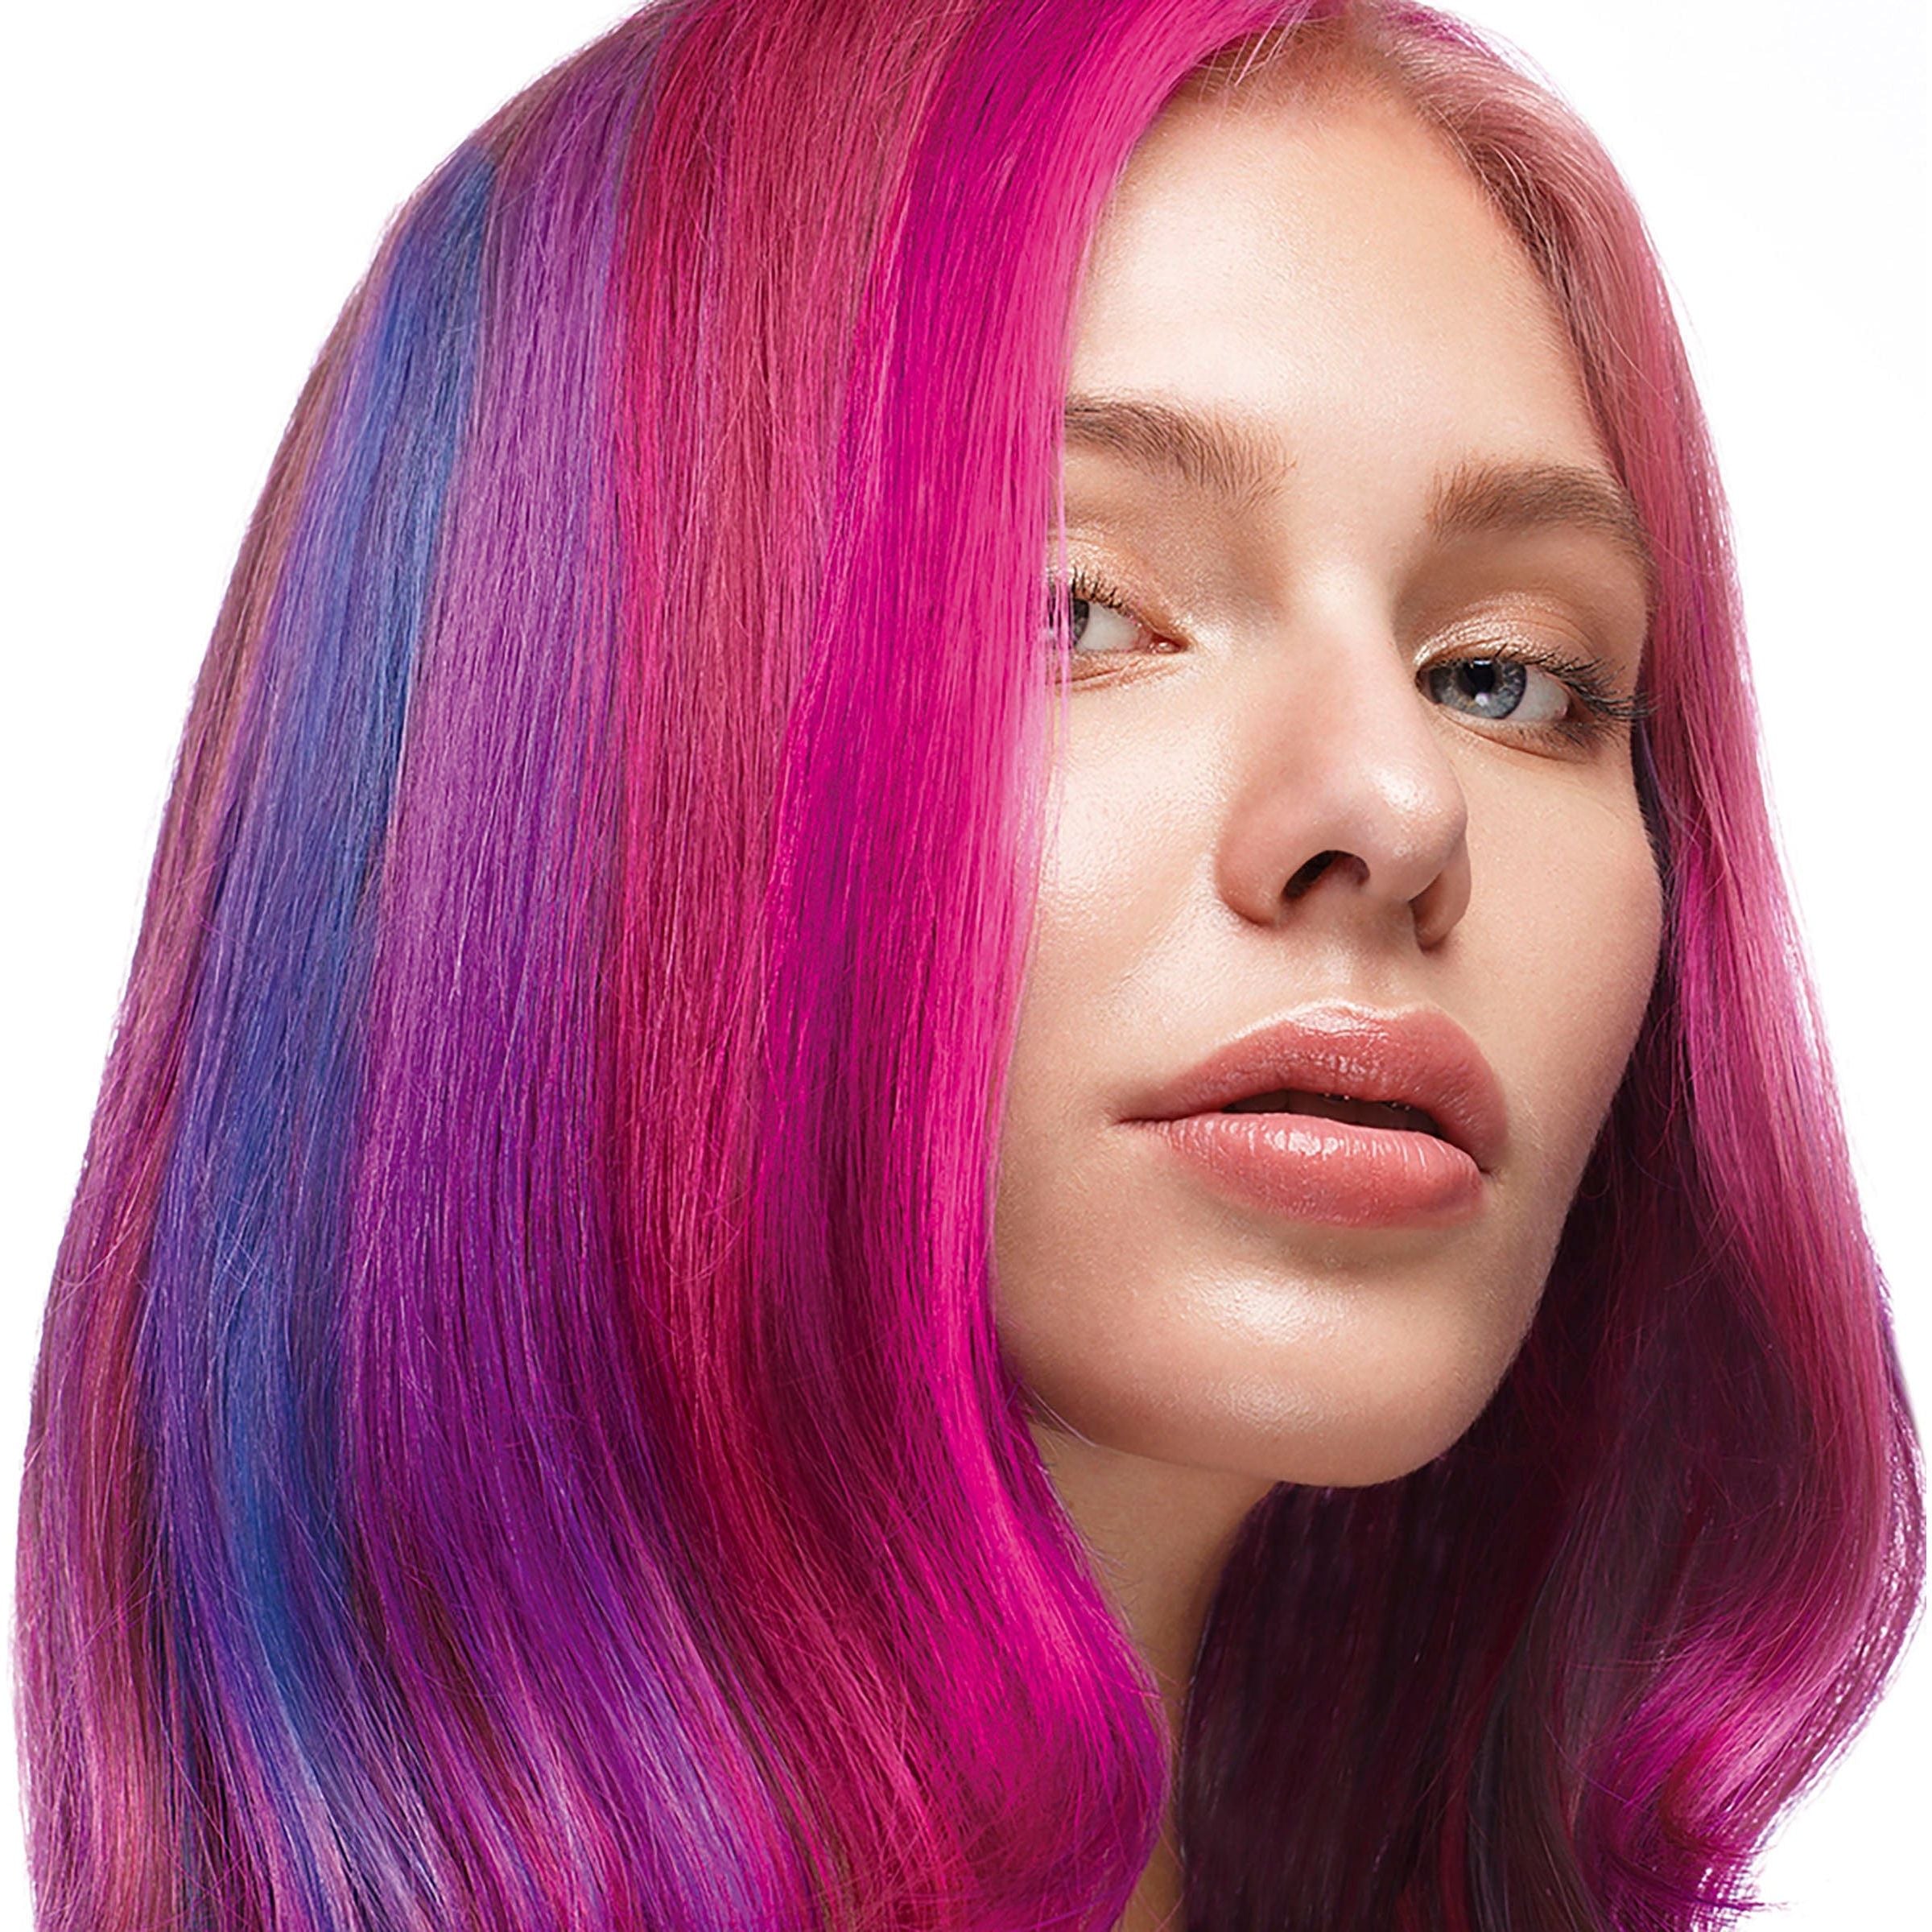 Stargazer Yummy Hair Colour Strips Kit - Vivid Model